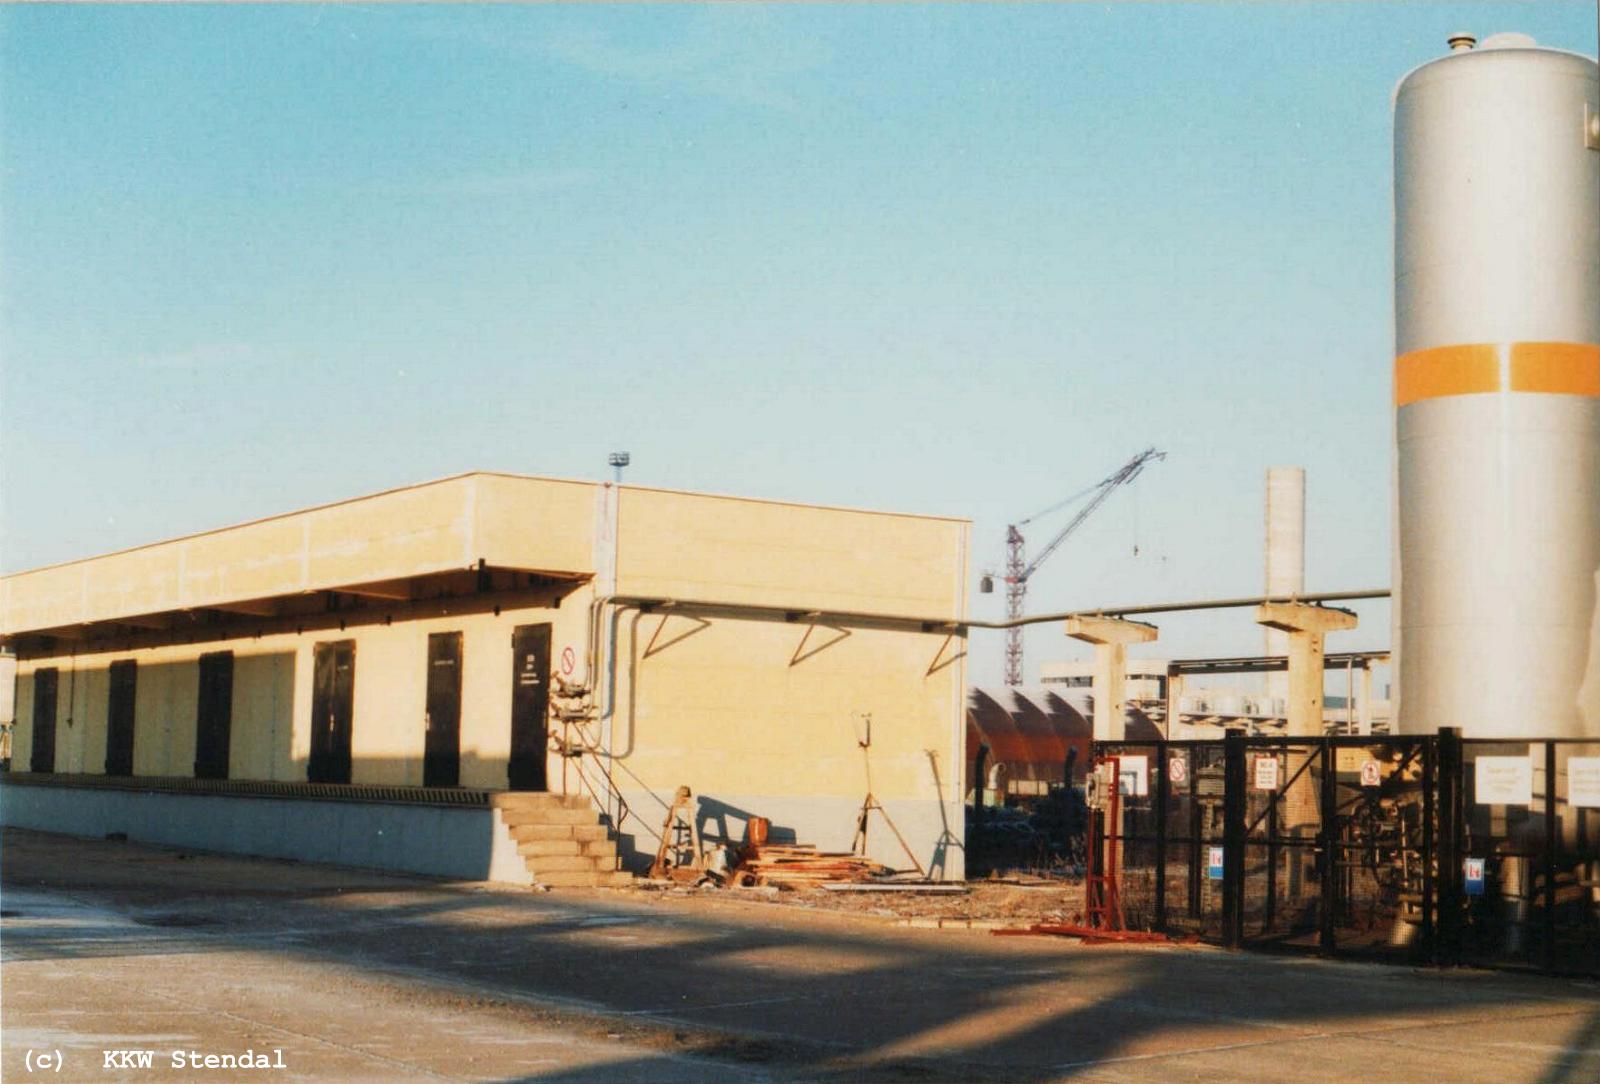  KKW Stendal, Baustelle 1990, Sauerstoffanlage und Gasflaschenlager 